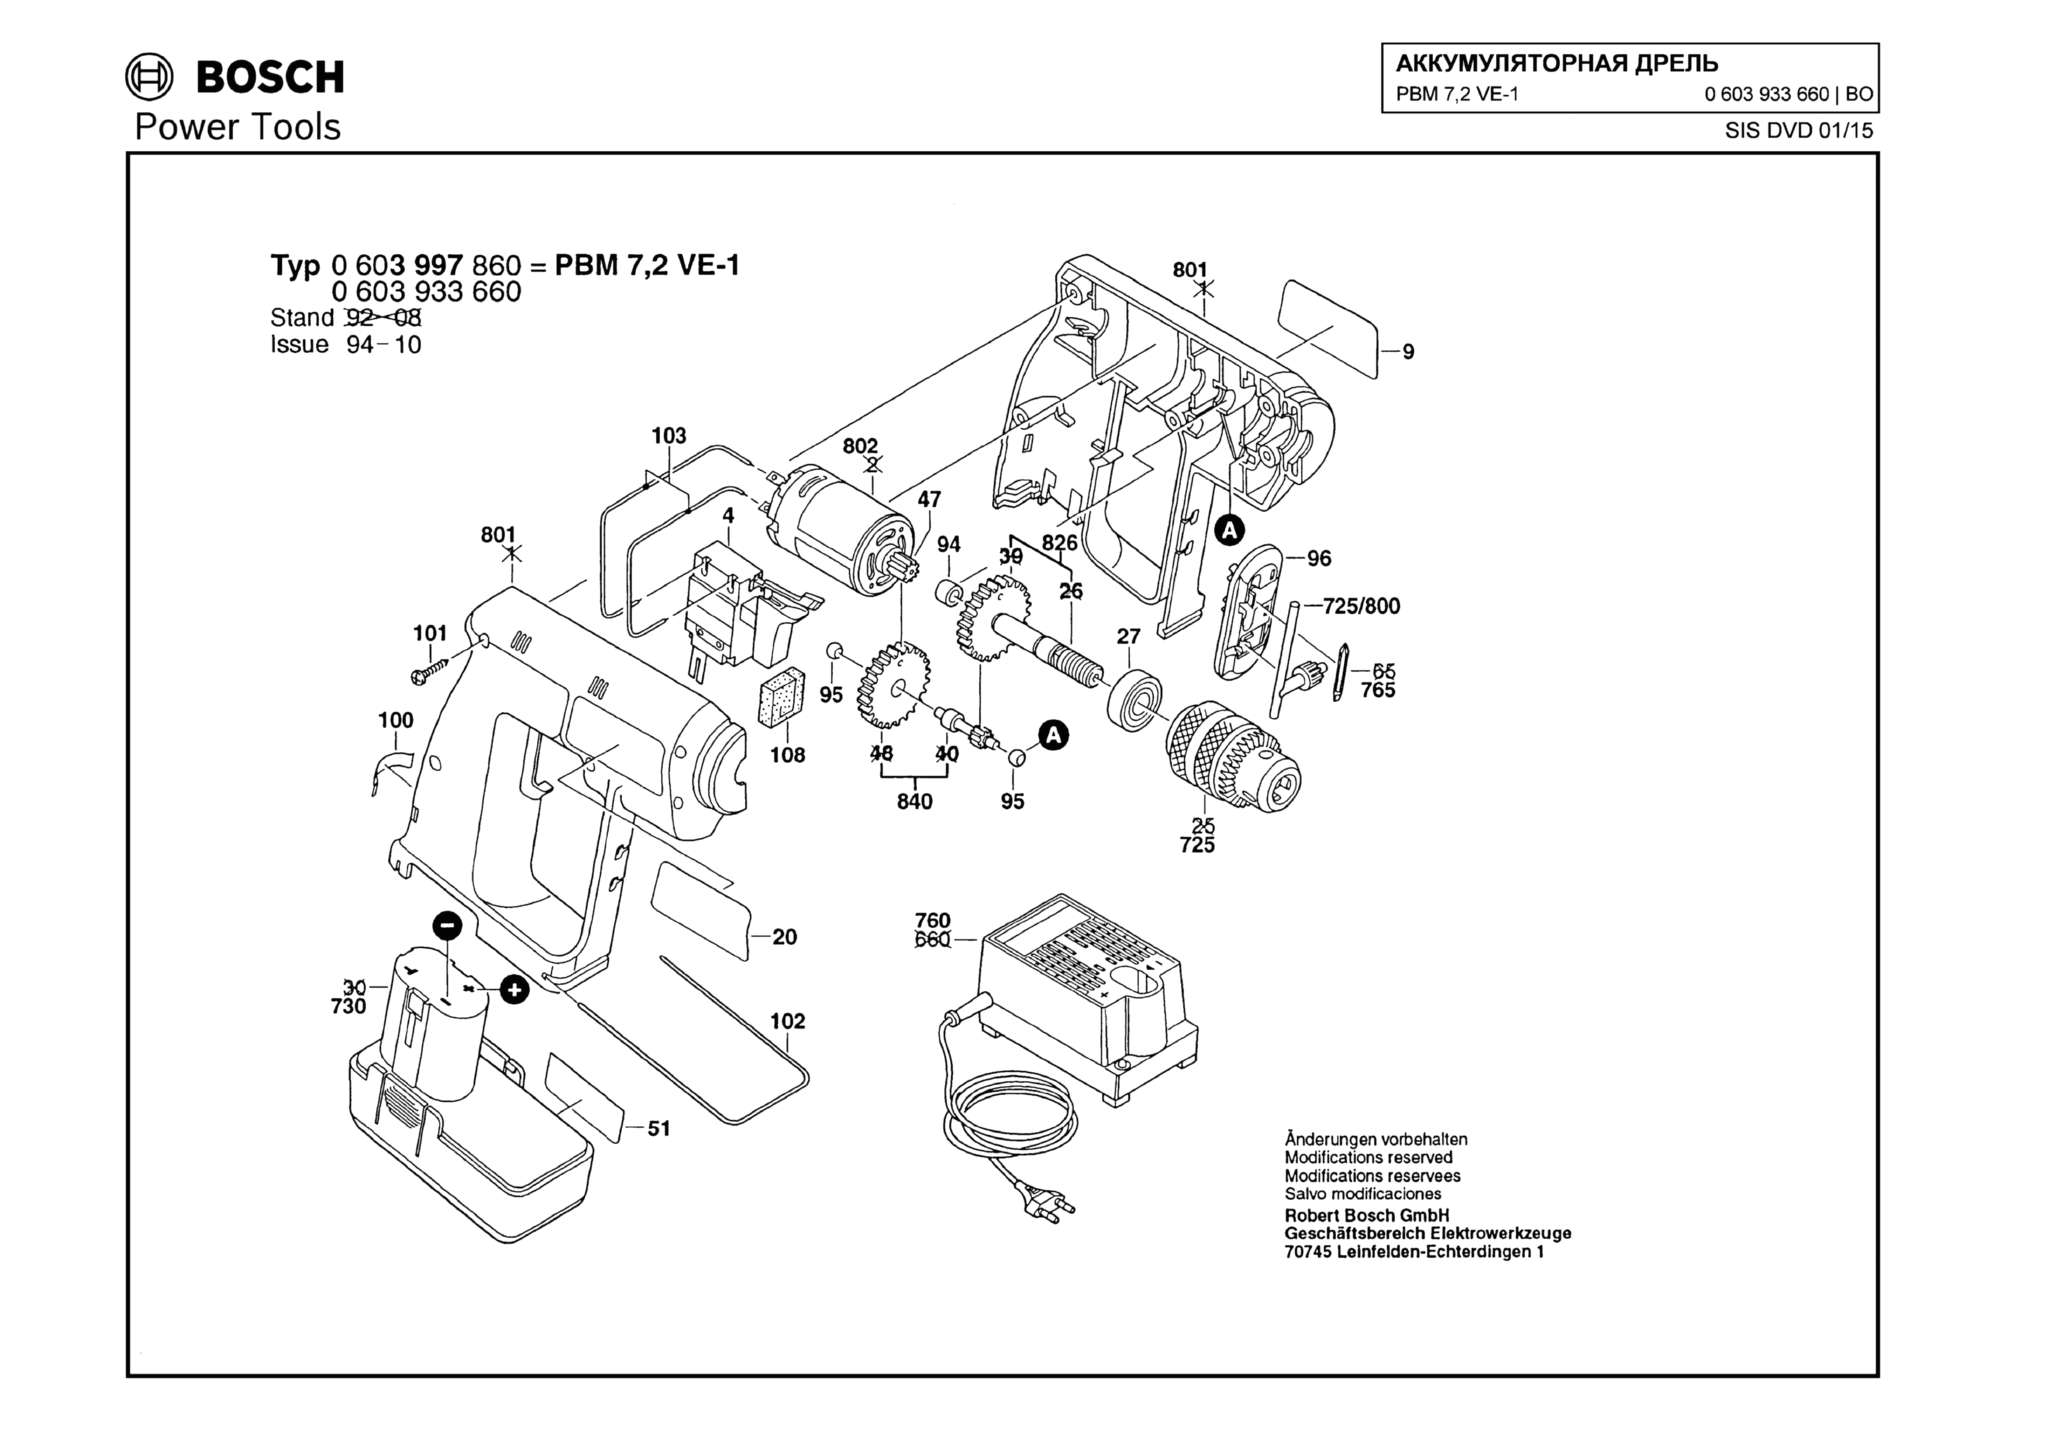 Запчасти, схема и деталировка Bosch PBM 7,2 VE-1 (ТИП 0603933660)